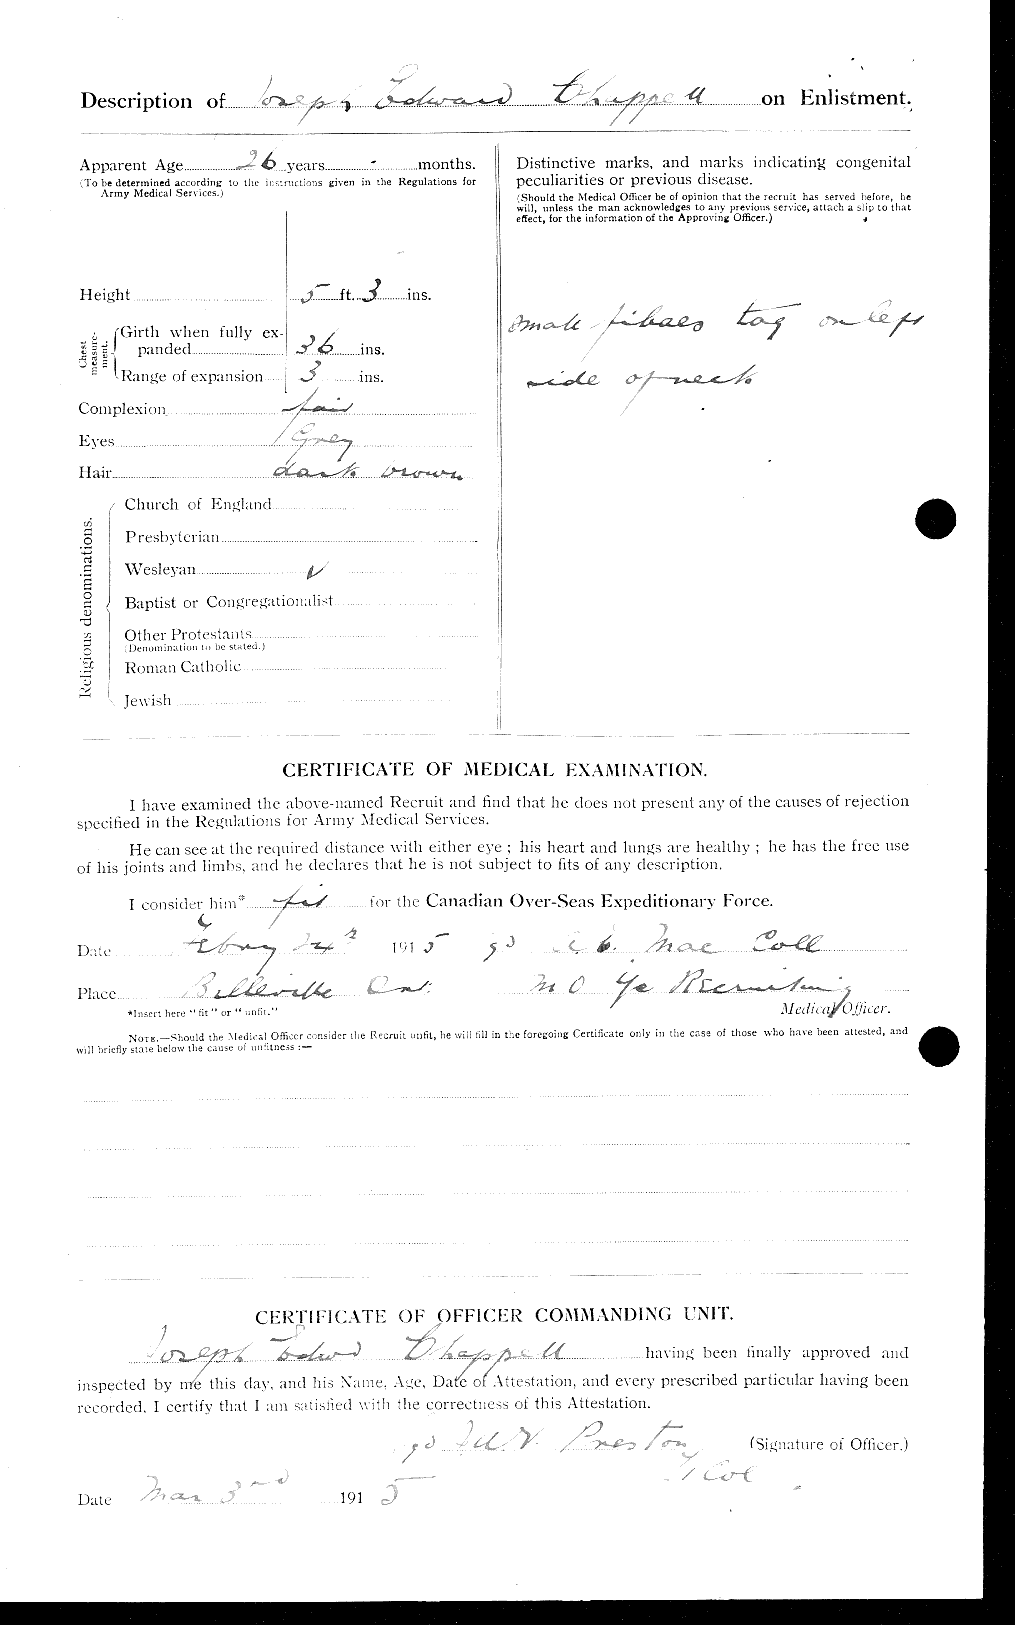 Dossiers du Personnel de la Première Guerre mondiale - CEC 014956b